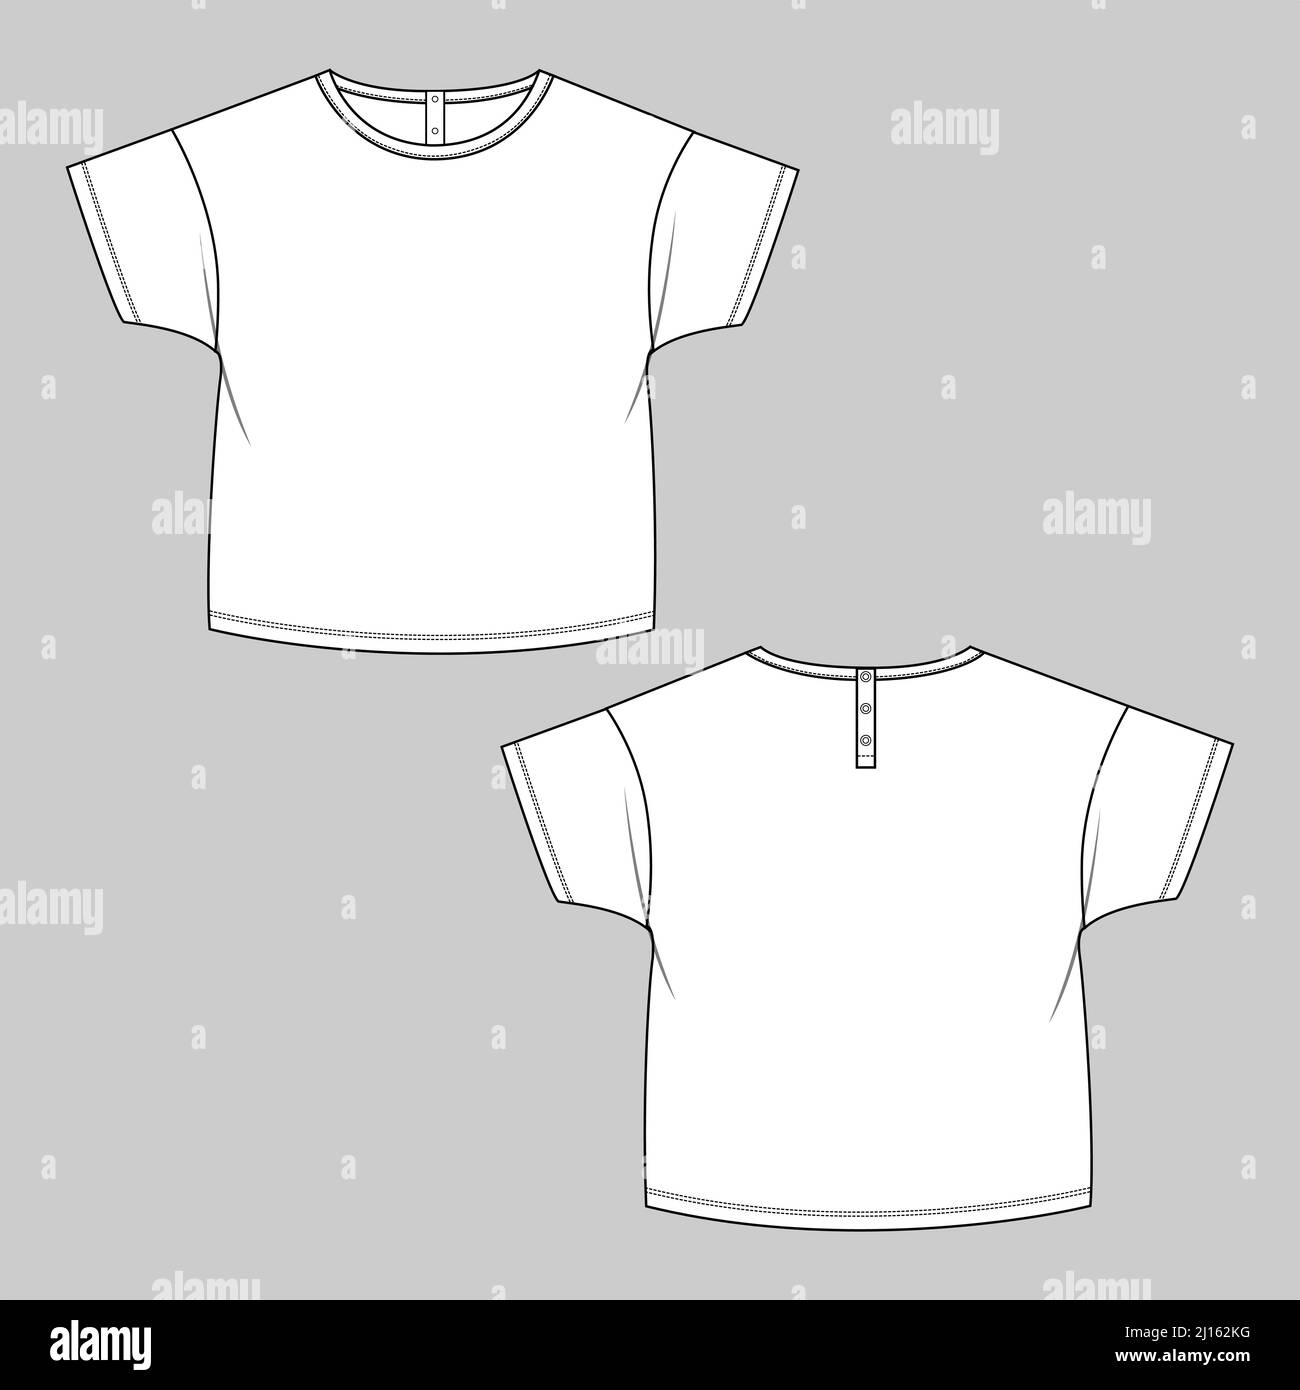 Dibujo técnico camiseta negra para niños. plantilla de diseño de camiseta  para niños.